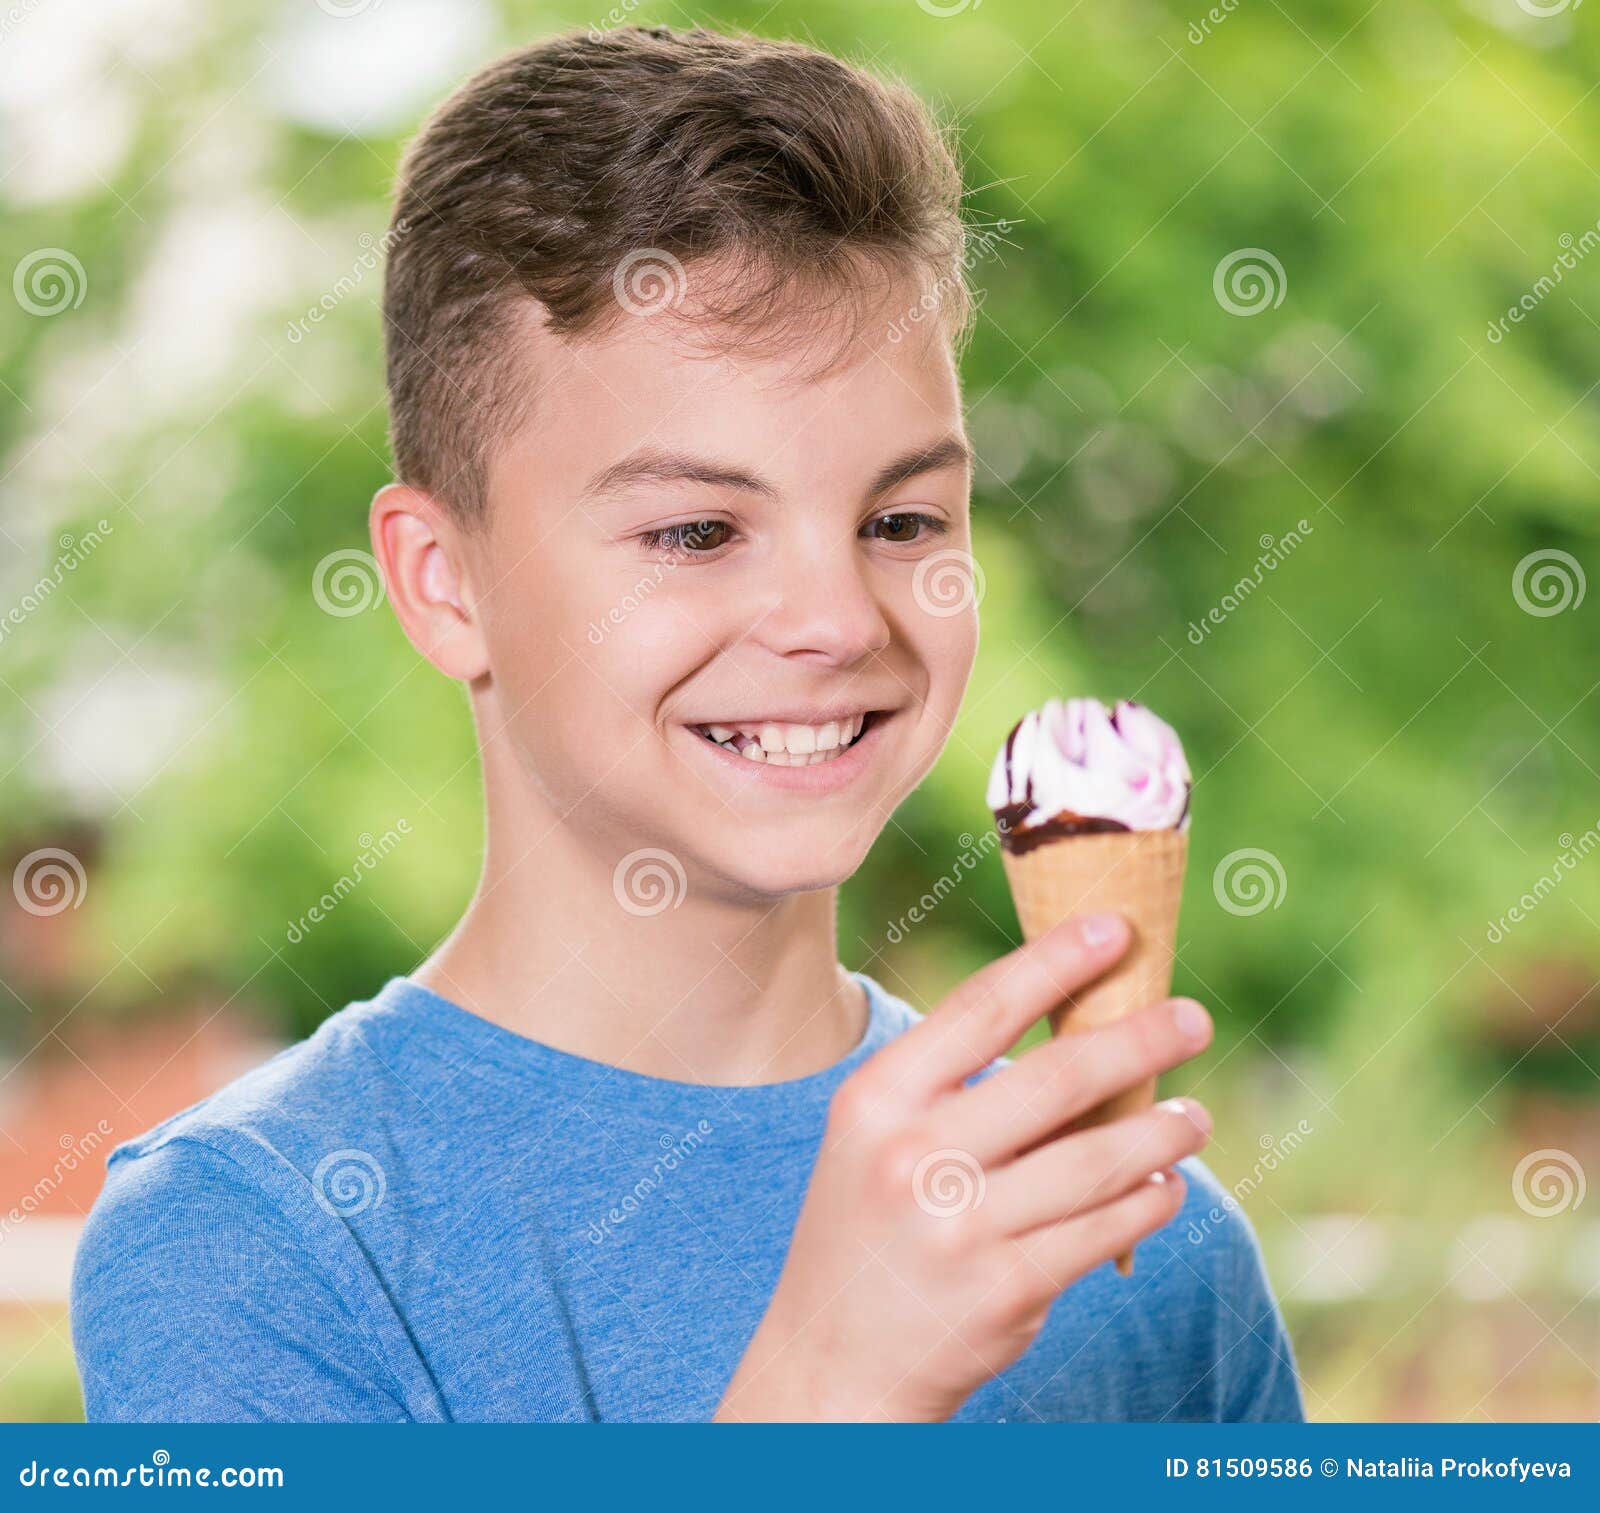 男孩奶油吃冰 库存照片. 图片 包括有 火箭筒, 点心, 表面, 人力, 面部, 乐趣, 感激的, 咧嘴, 巧克力 - 7670436